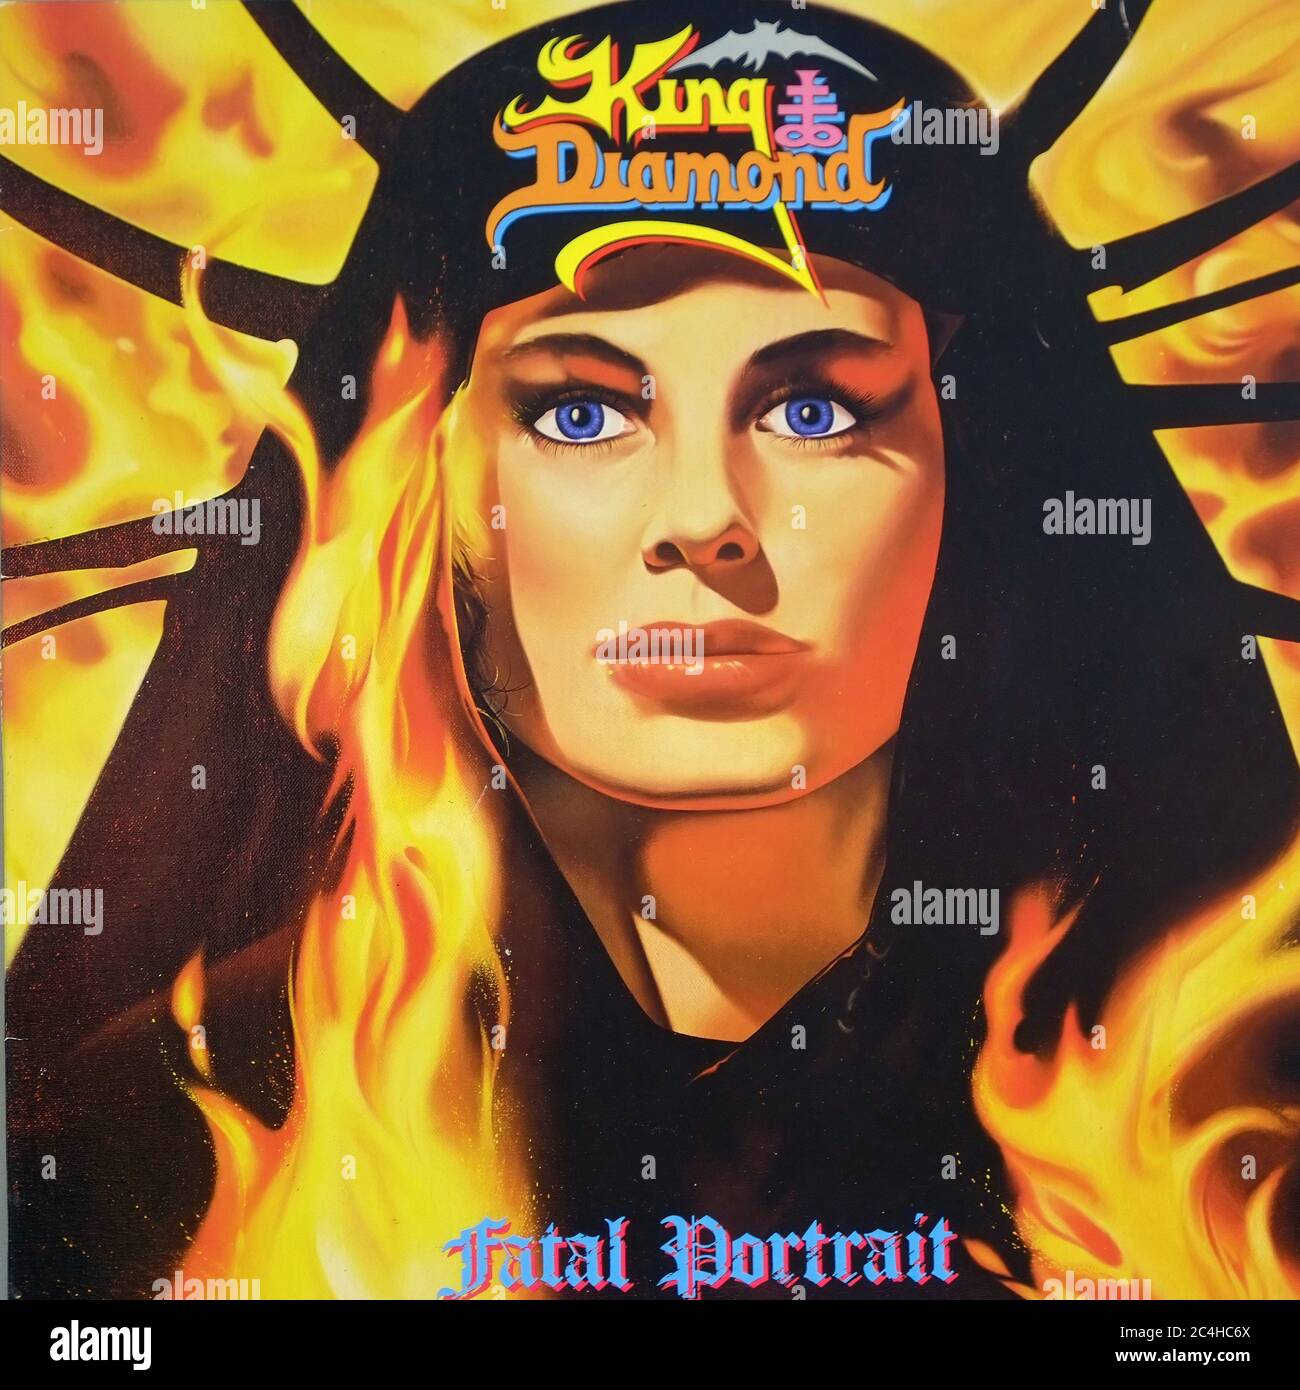 King Diamond Fatal Portrait 12'' Lp Album Vinyl - Vintage Cover Stock Photo  - Alamy